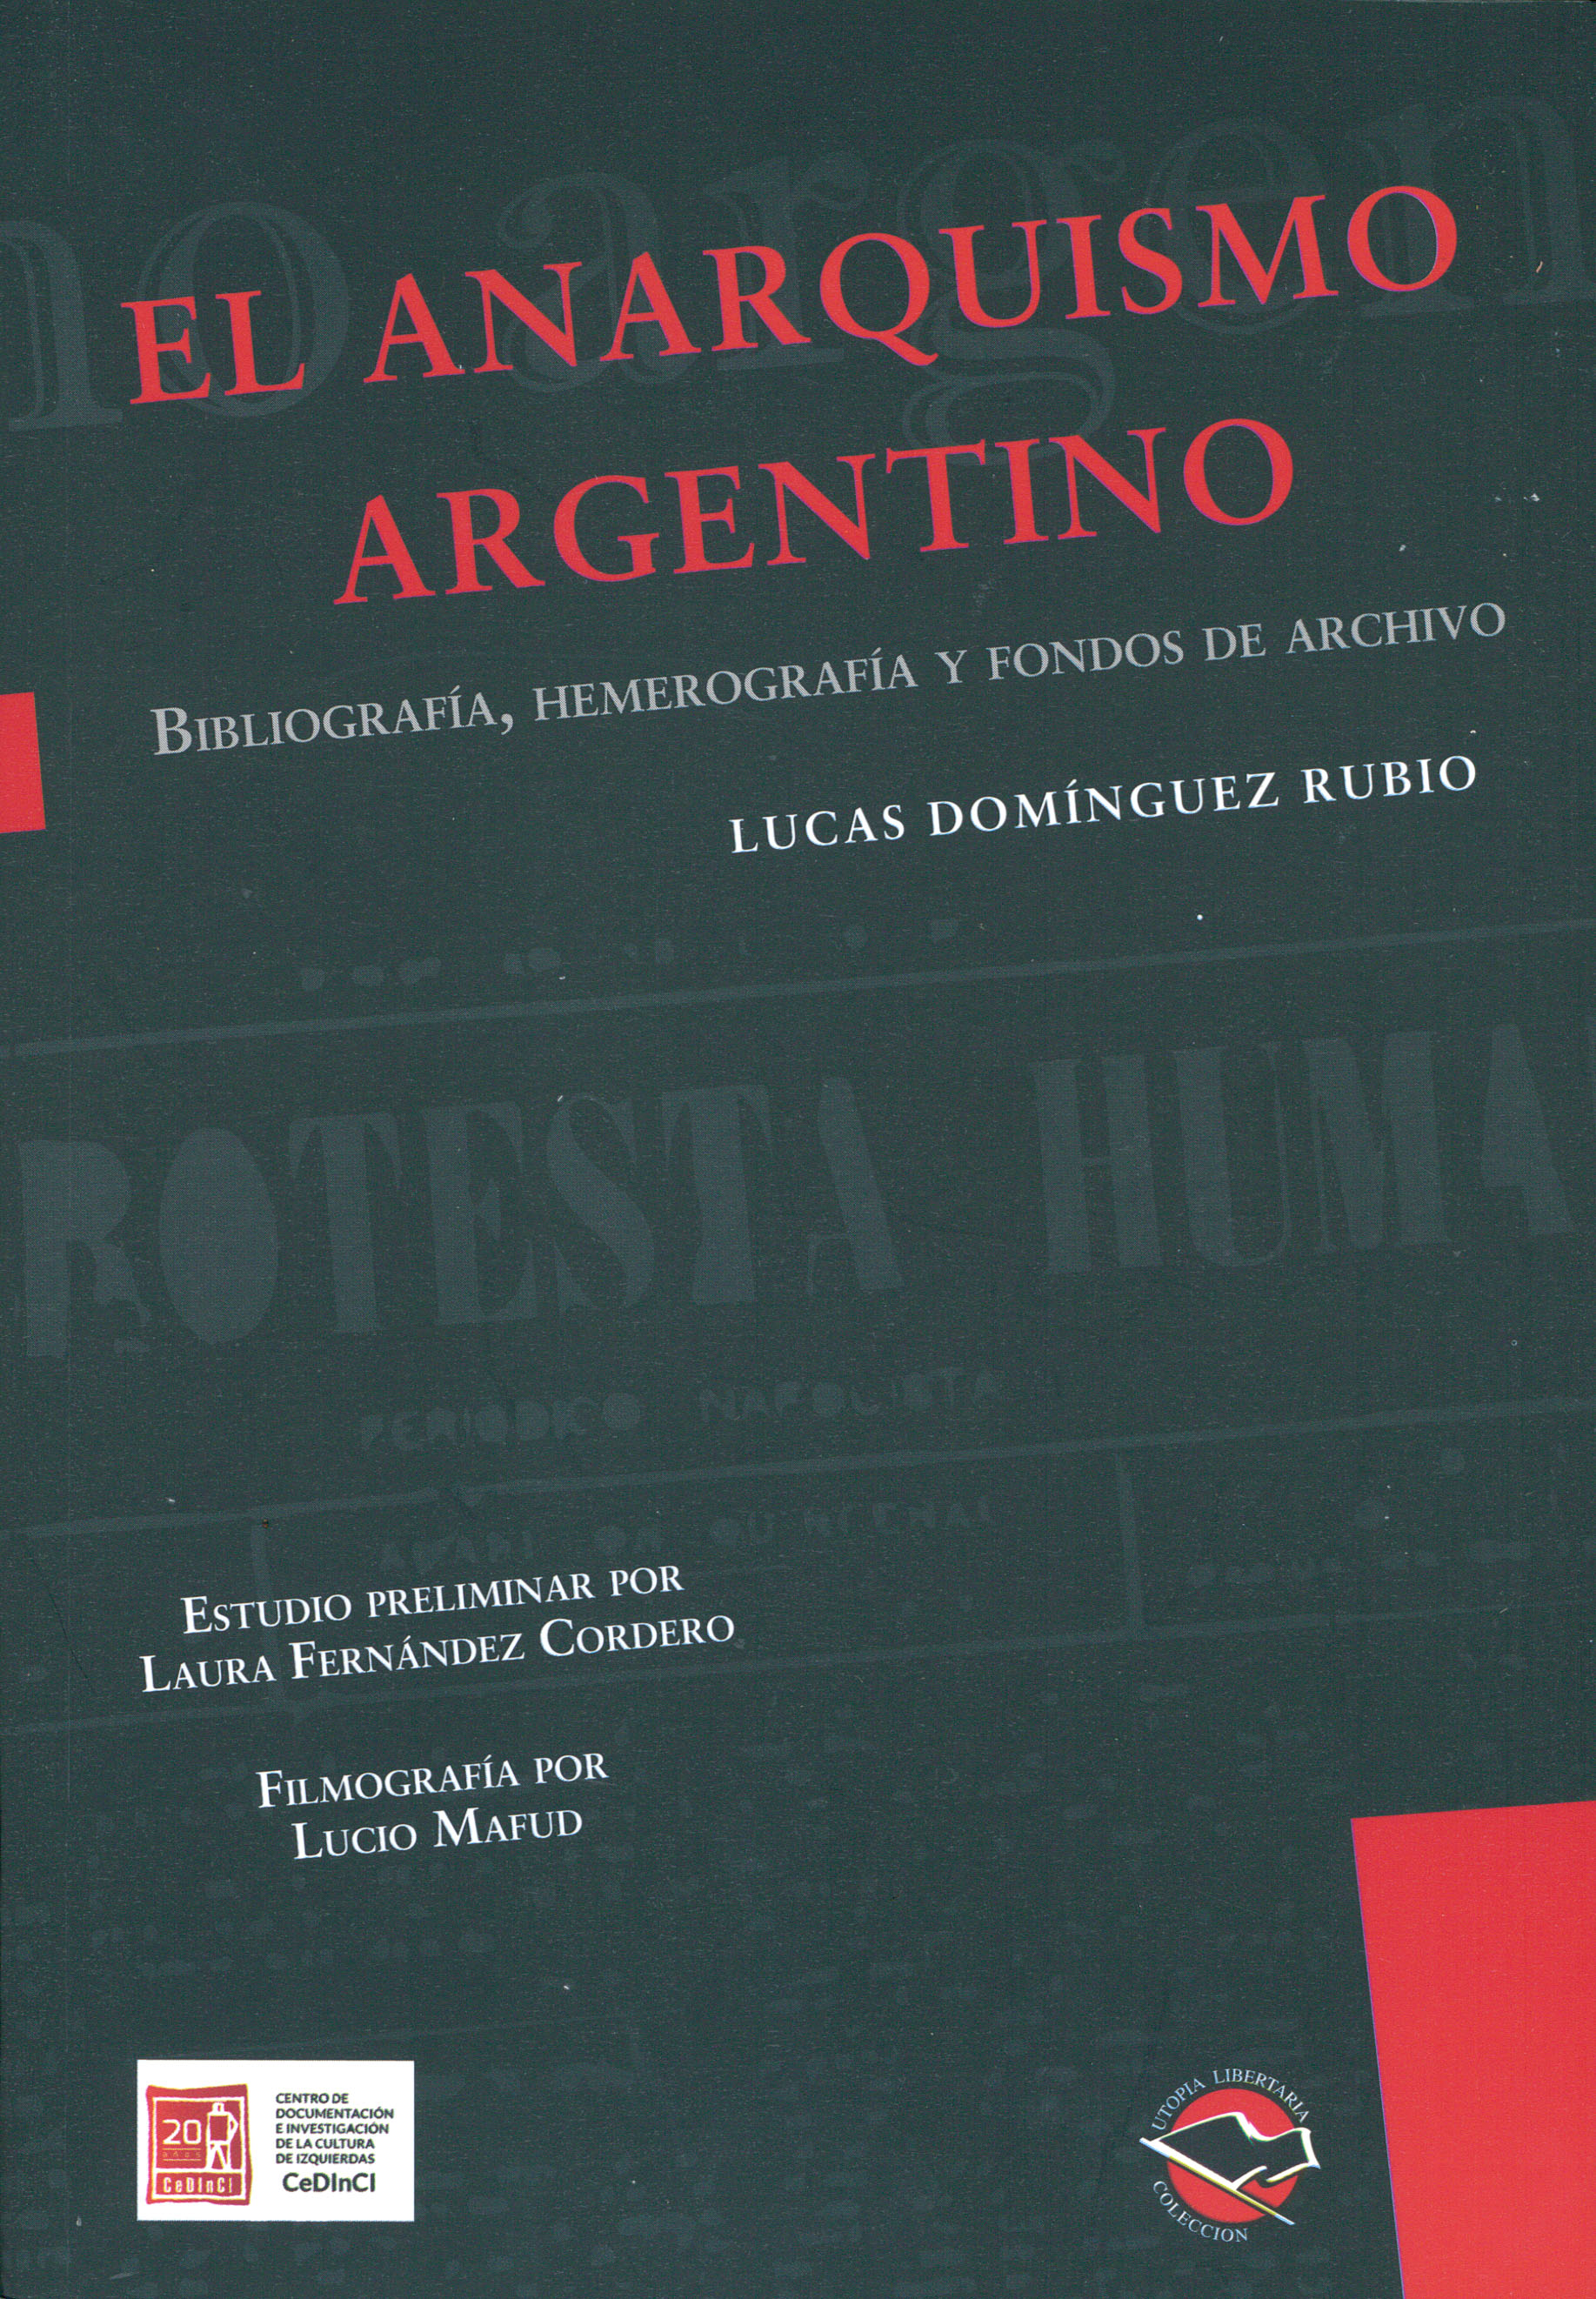 El libro de Lucas Dominguez Rubio, “El Anarquismo argentino” ya puede consultarse online